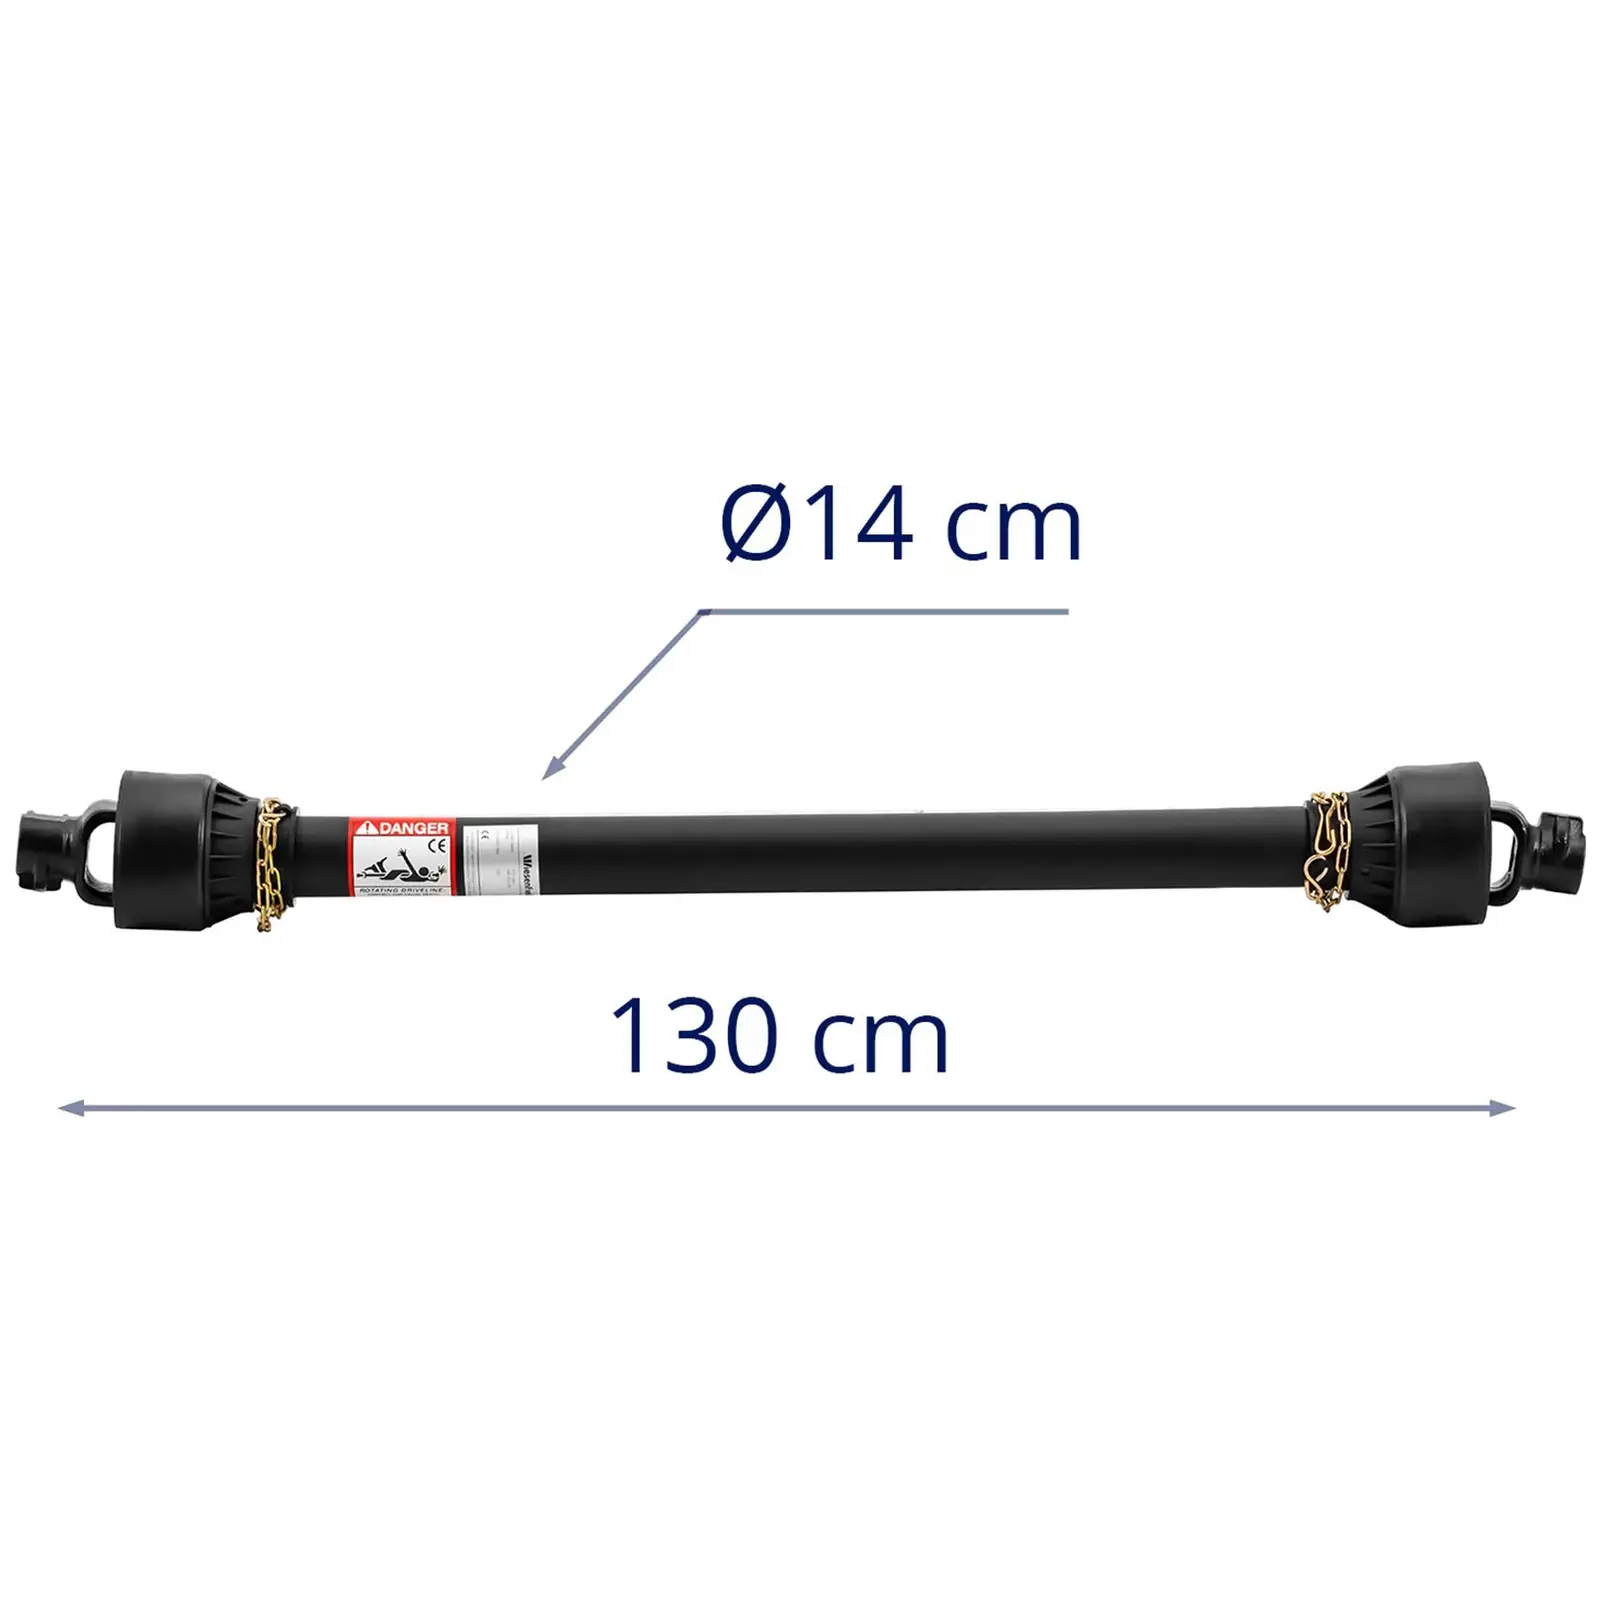 Arbre de transmission avec compensation de longueur - 127 - 194 cm - 1 3/8 pouce / 6 cannelures